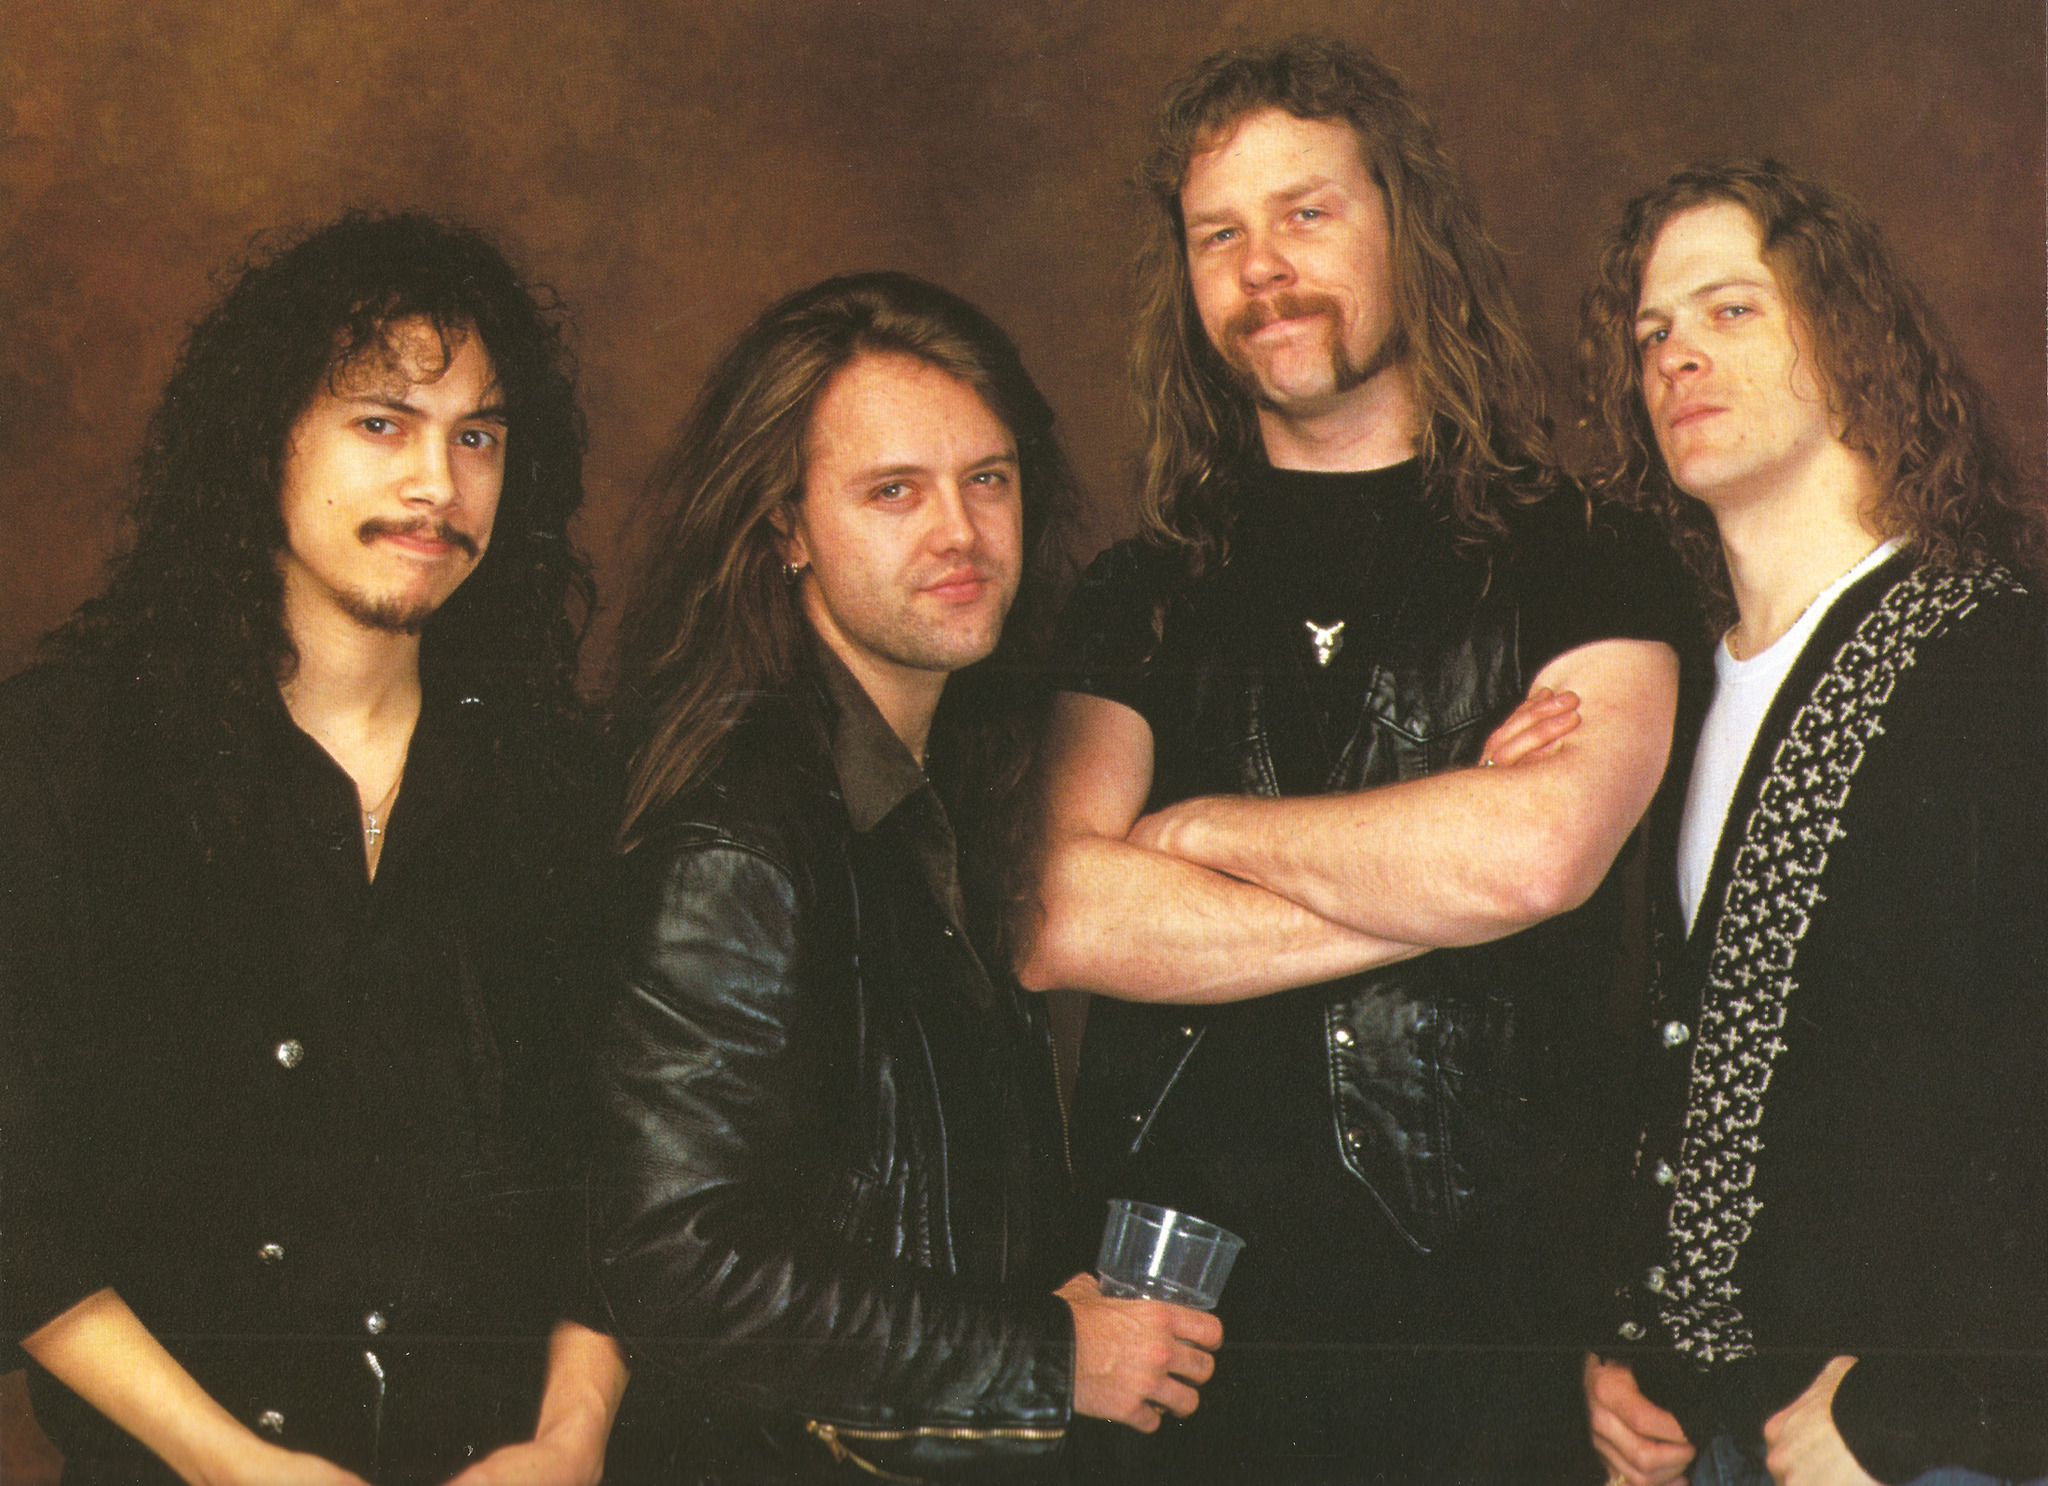 People 2048x1486 Metallica Lars Ulrich James Hetfield long hair dark hair heavy metal thrash metal beard black leather jeans Kirk Hammett band Big 4 metal band music men